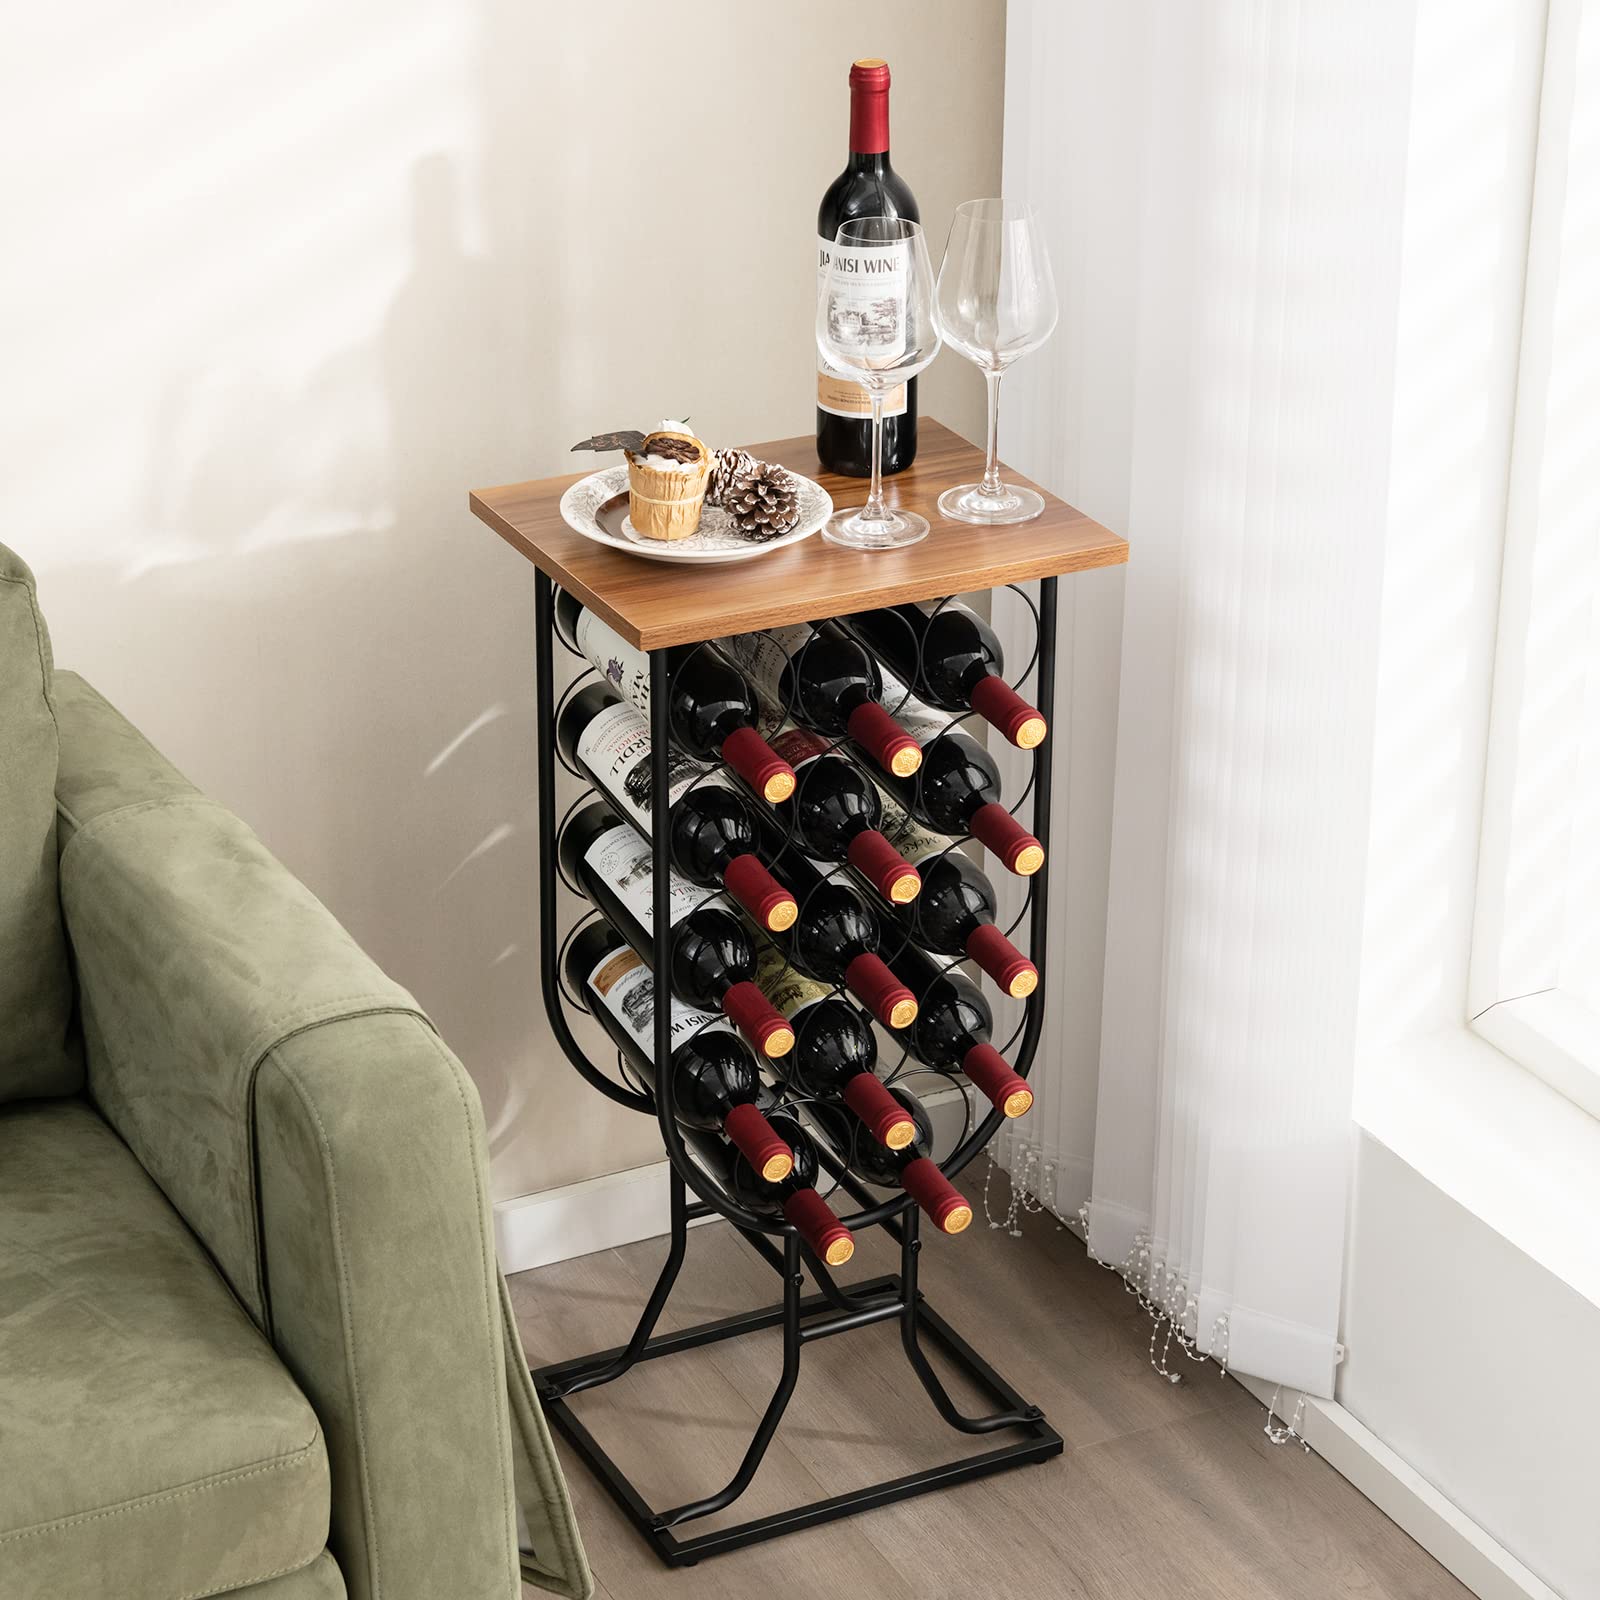 14-Bottle Wine Rack Freestanding Floor - Giantex